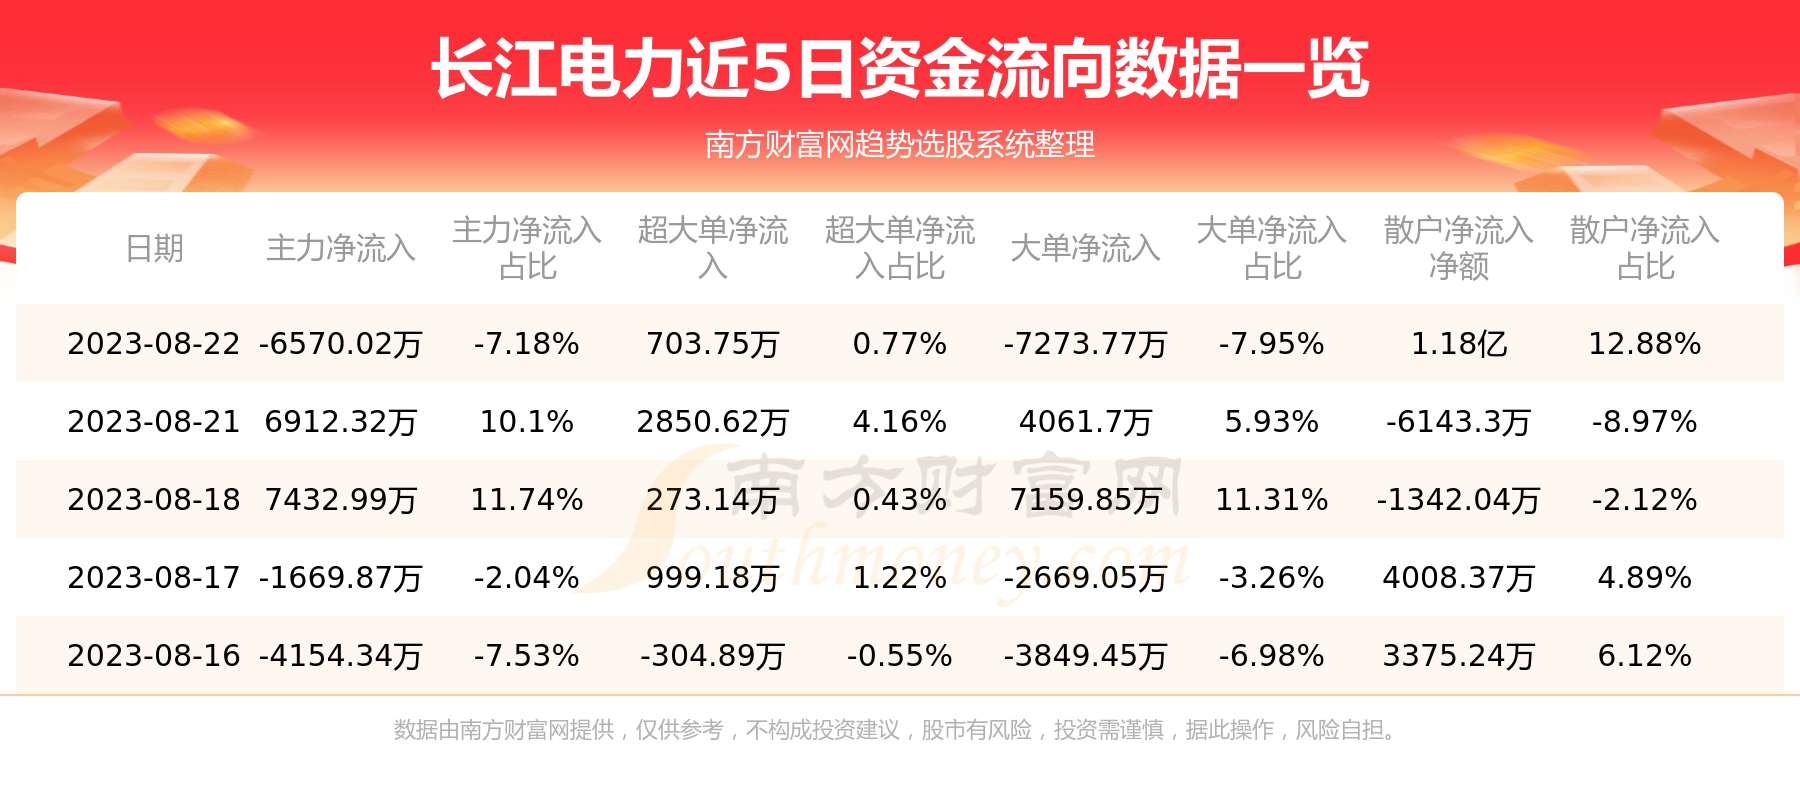 【8月22日资金流向】长江电力资金流向一览表